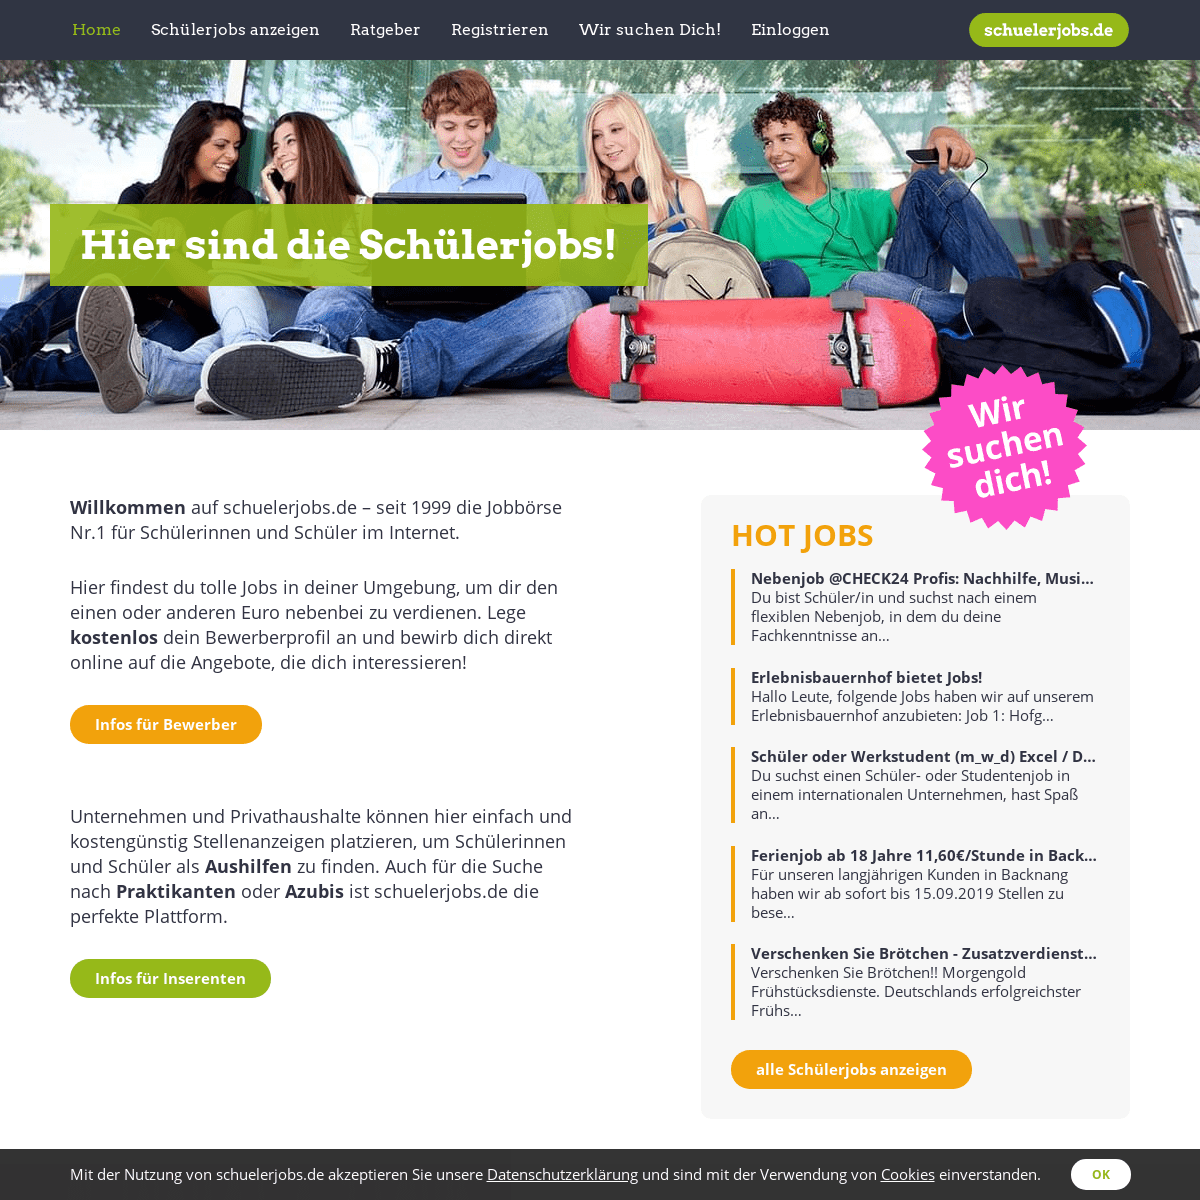 schuelerjobs.de - Aushilfsjobs & Nebenjobs für Schüler